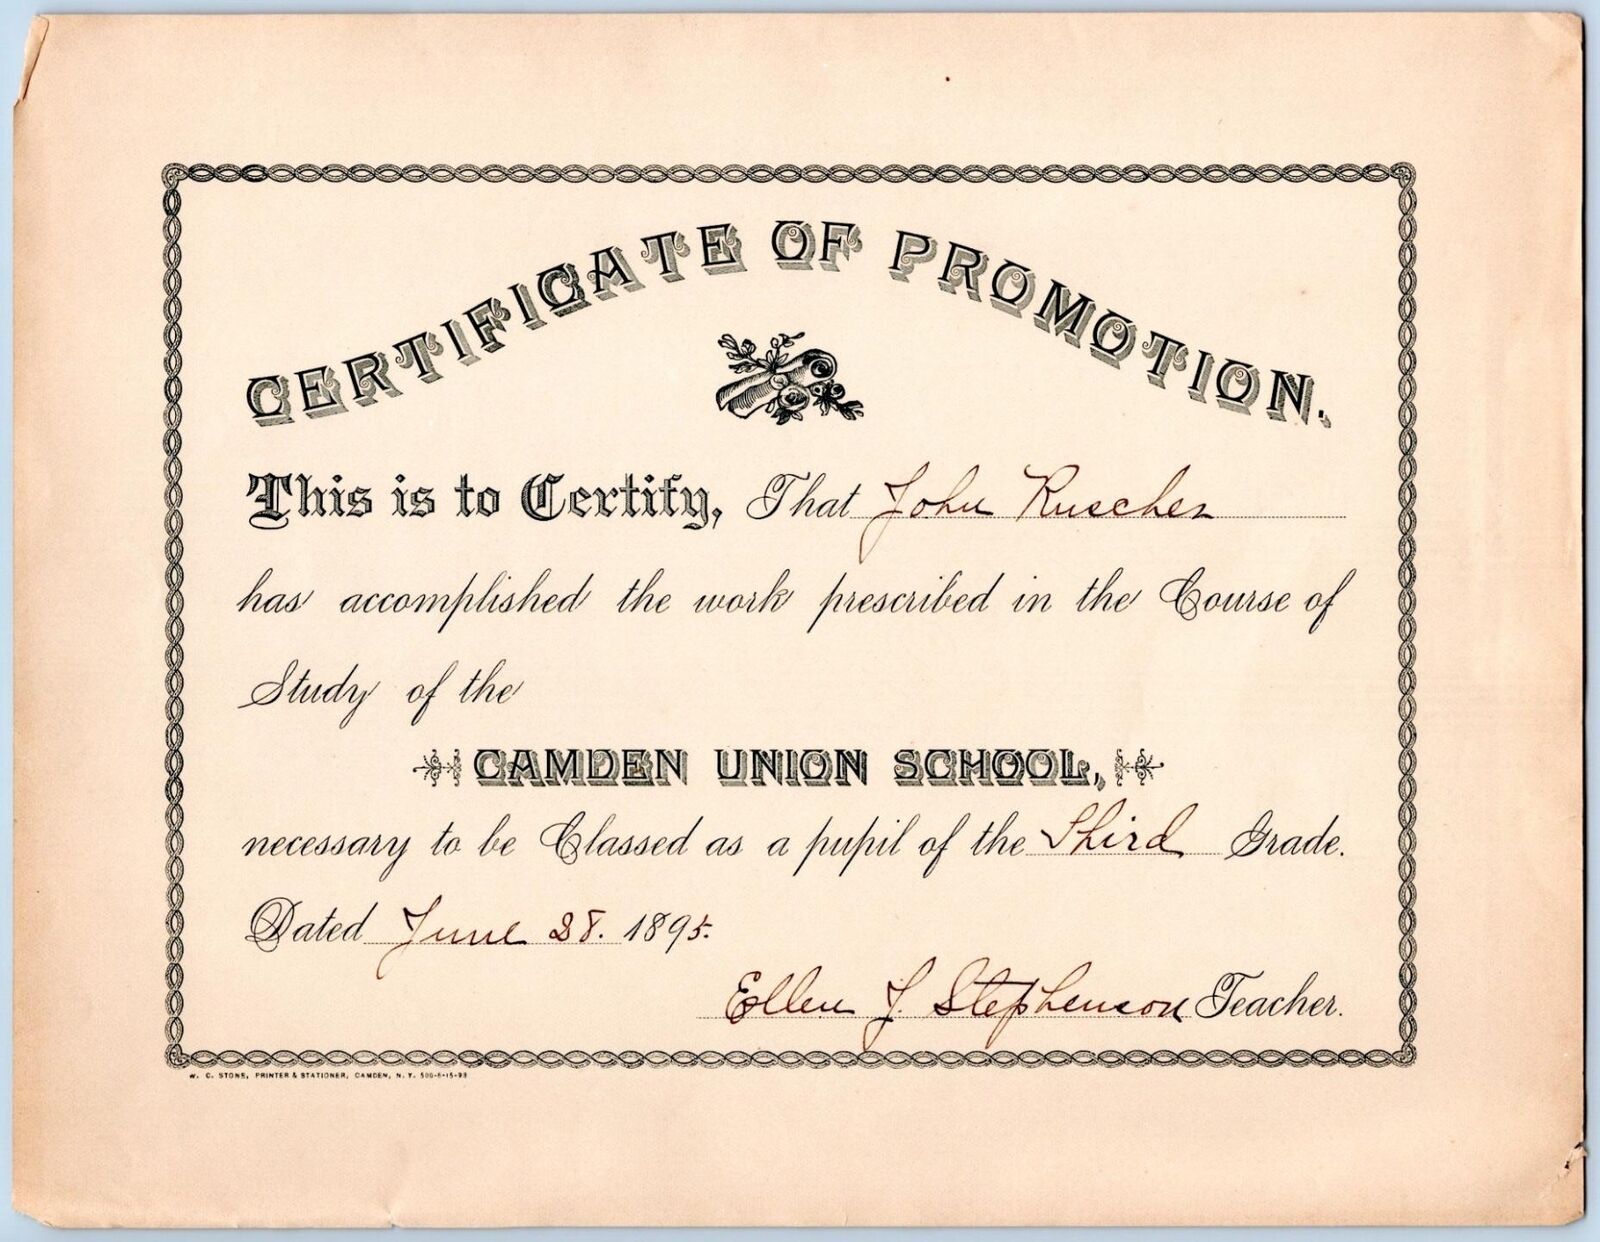 1895 CAMDEN UNION SCHOOL NEW YORK PROMOTION CERTIFICATE JOHN RUSCHER 3rd GRADE